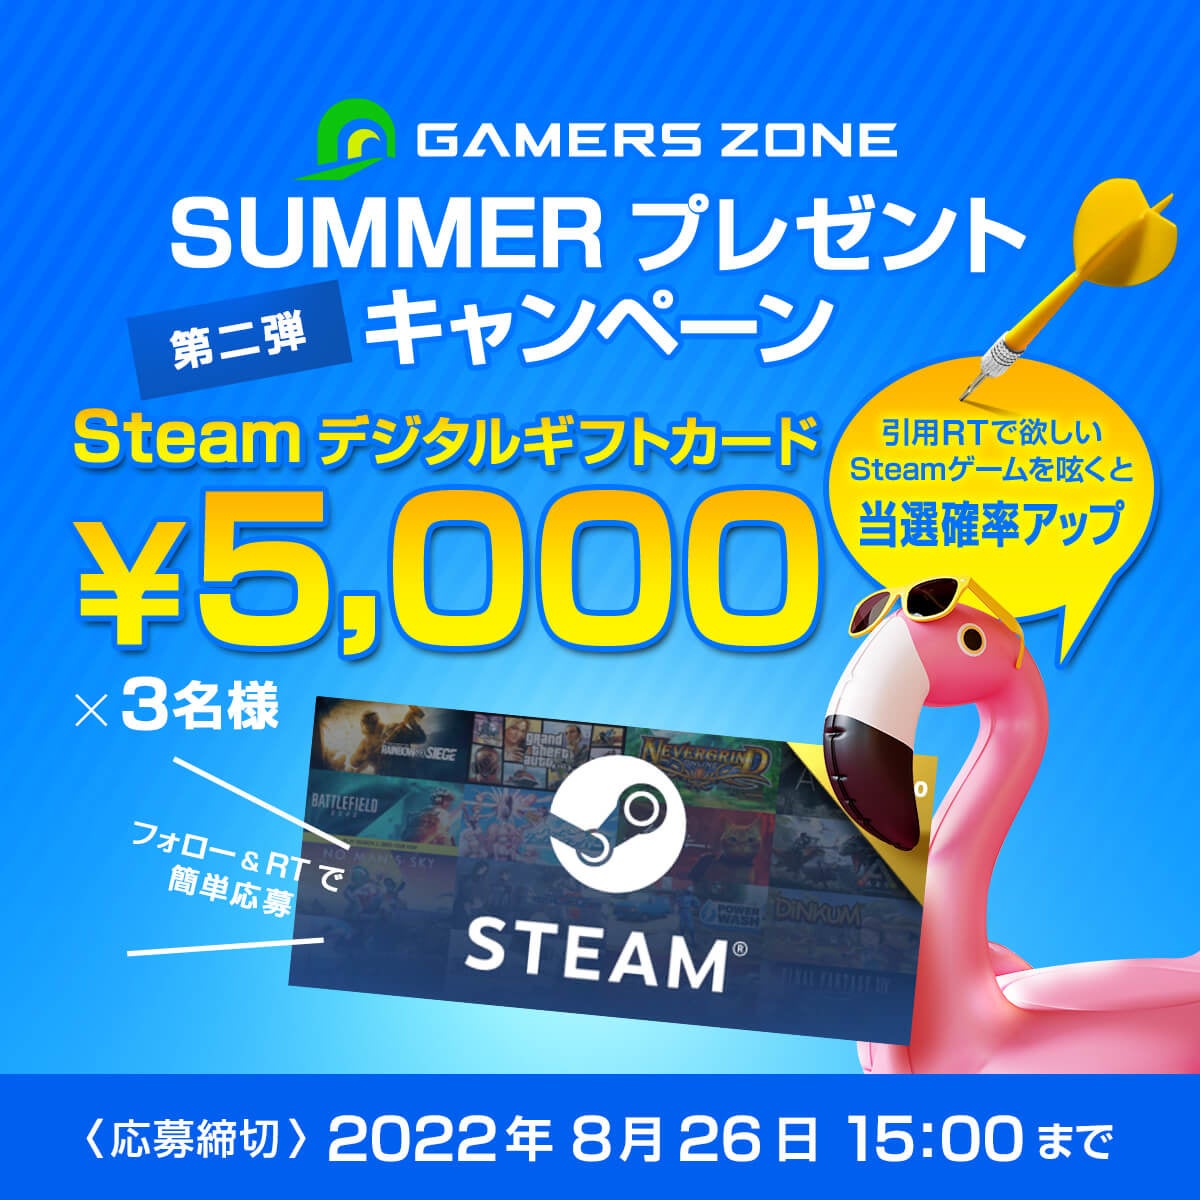 Steamデジタルギフト5000円分が3名に当たる「GAMERS ZONE サマーキャンペーン」8/19 20:00よりスタート